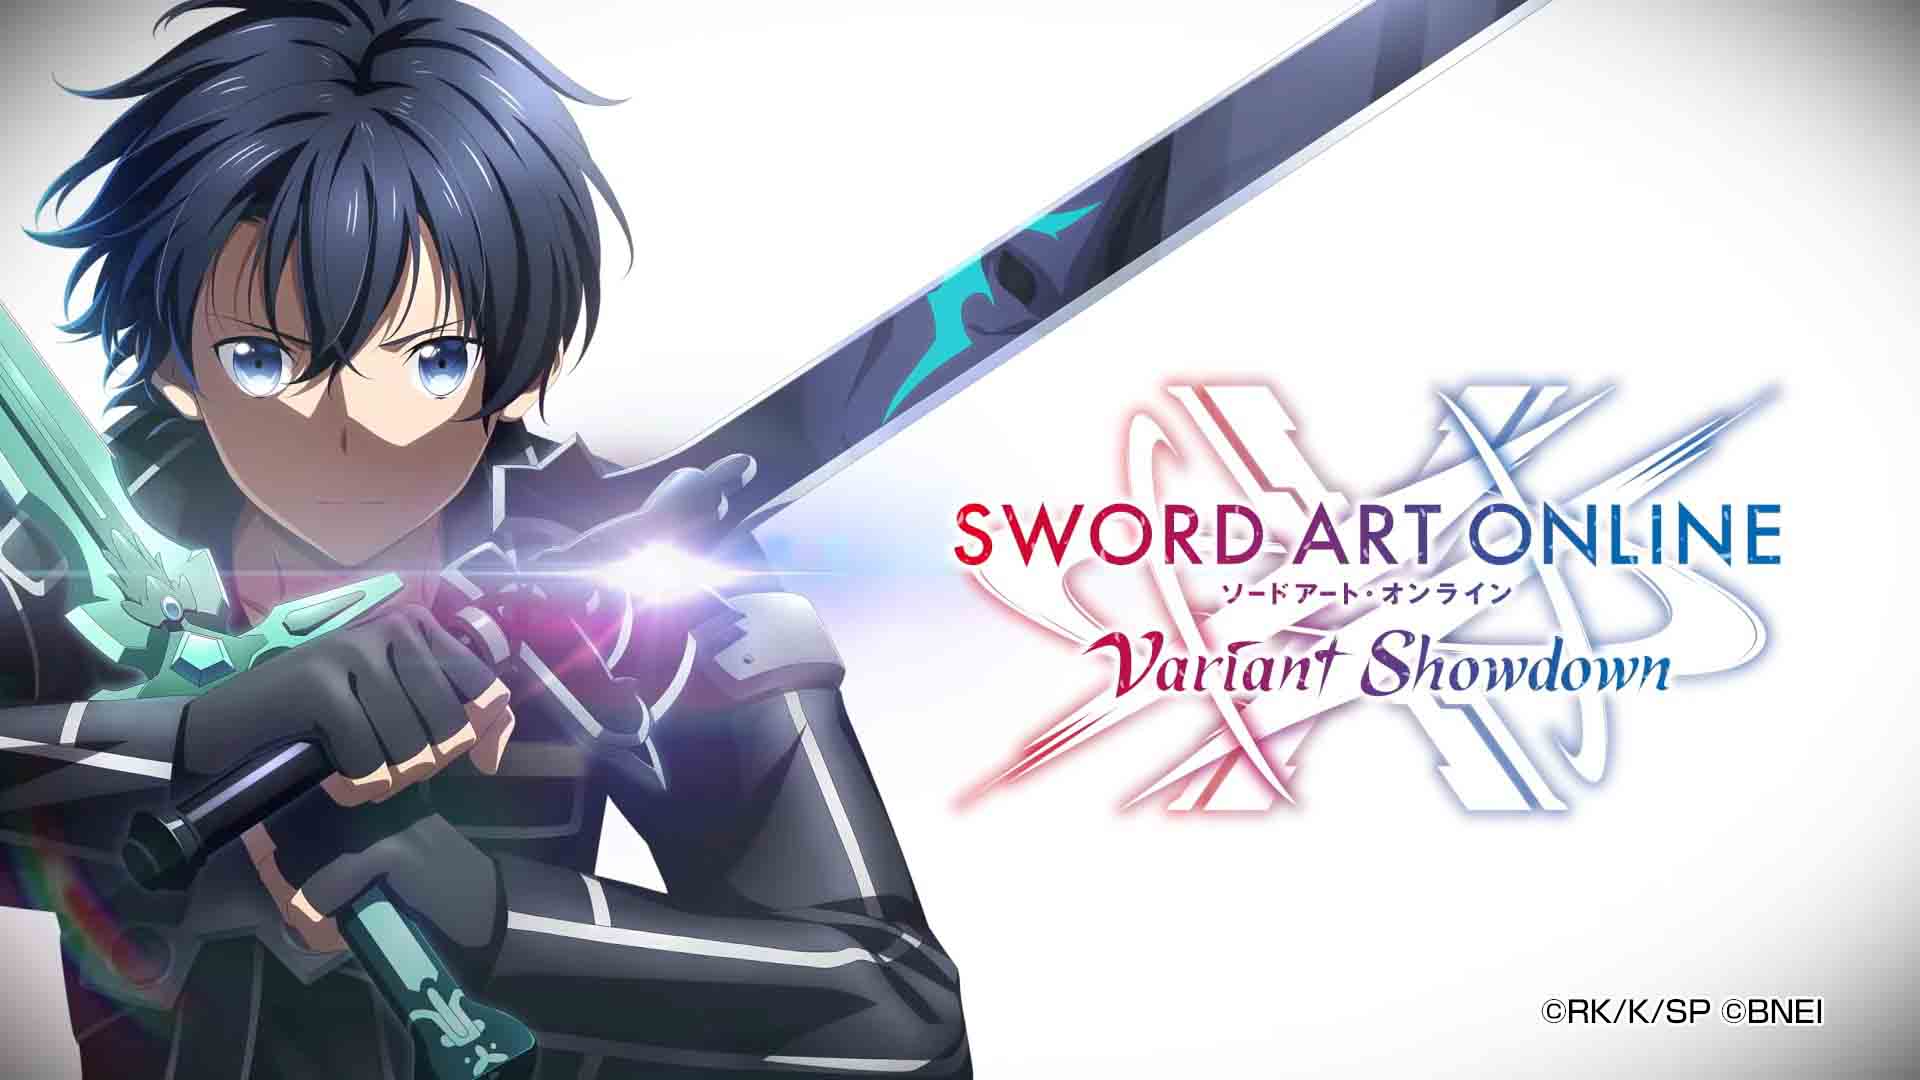 Các chế độ chơi trong Sword Art Online: Variant Showdown cần phải biết